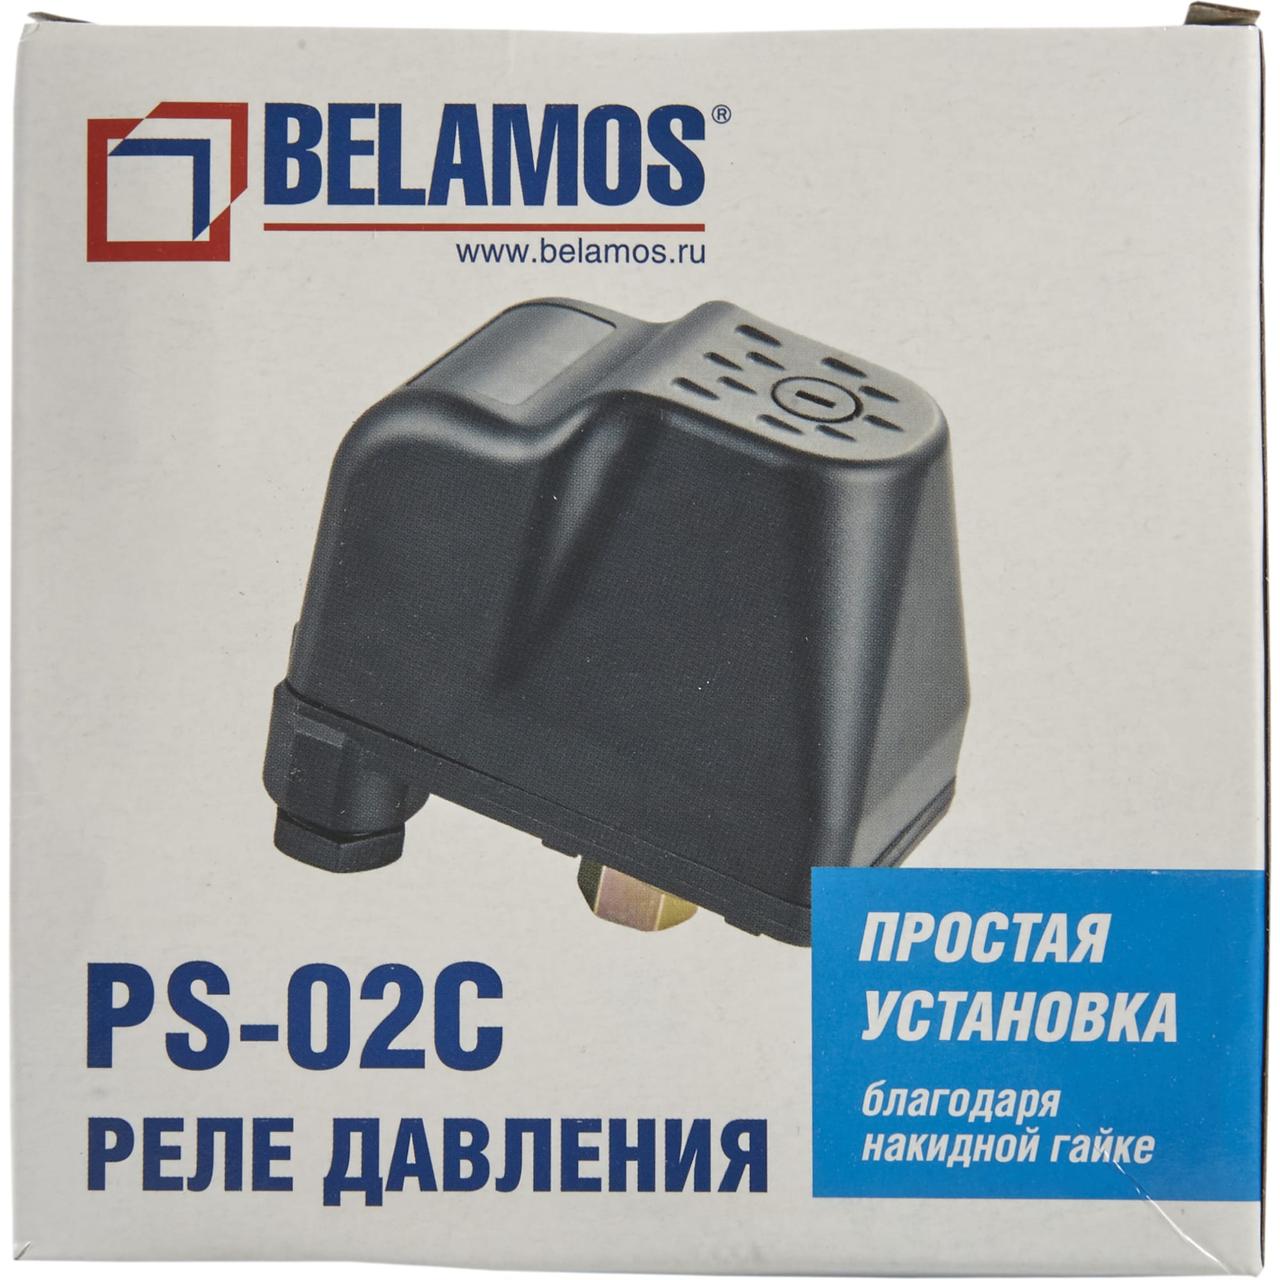 Реле давления воды ps 07a. Реле давления PS-02c Беламос. Реле давления Беламос PS-02. Реле давления воды PS-02c. Реле давления belamos PR-10.